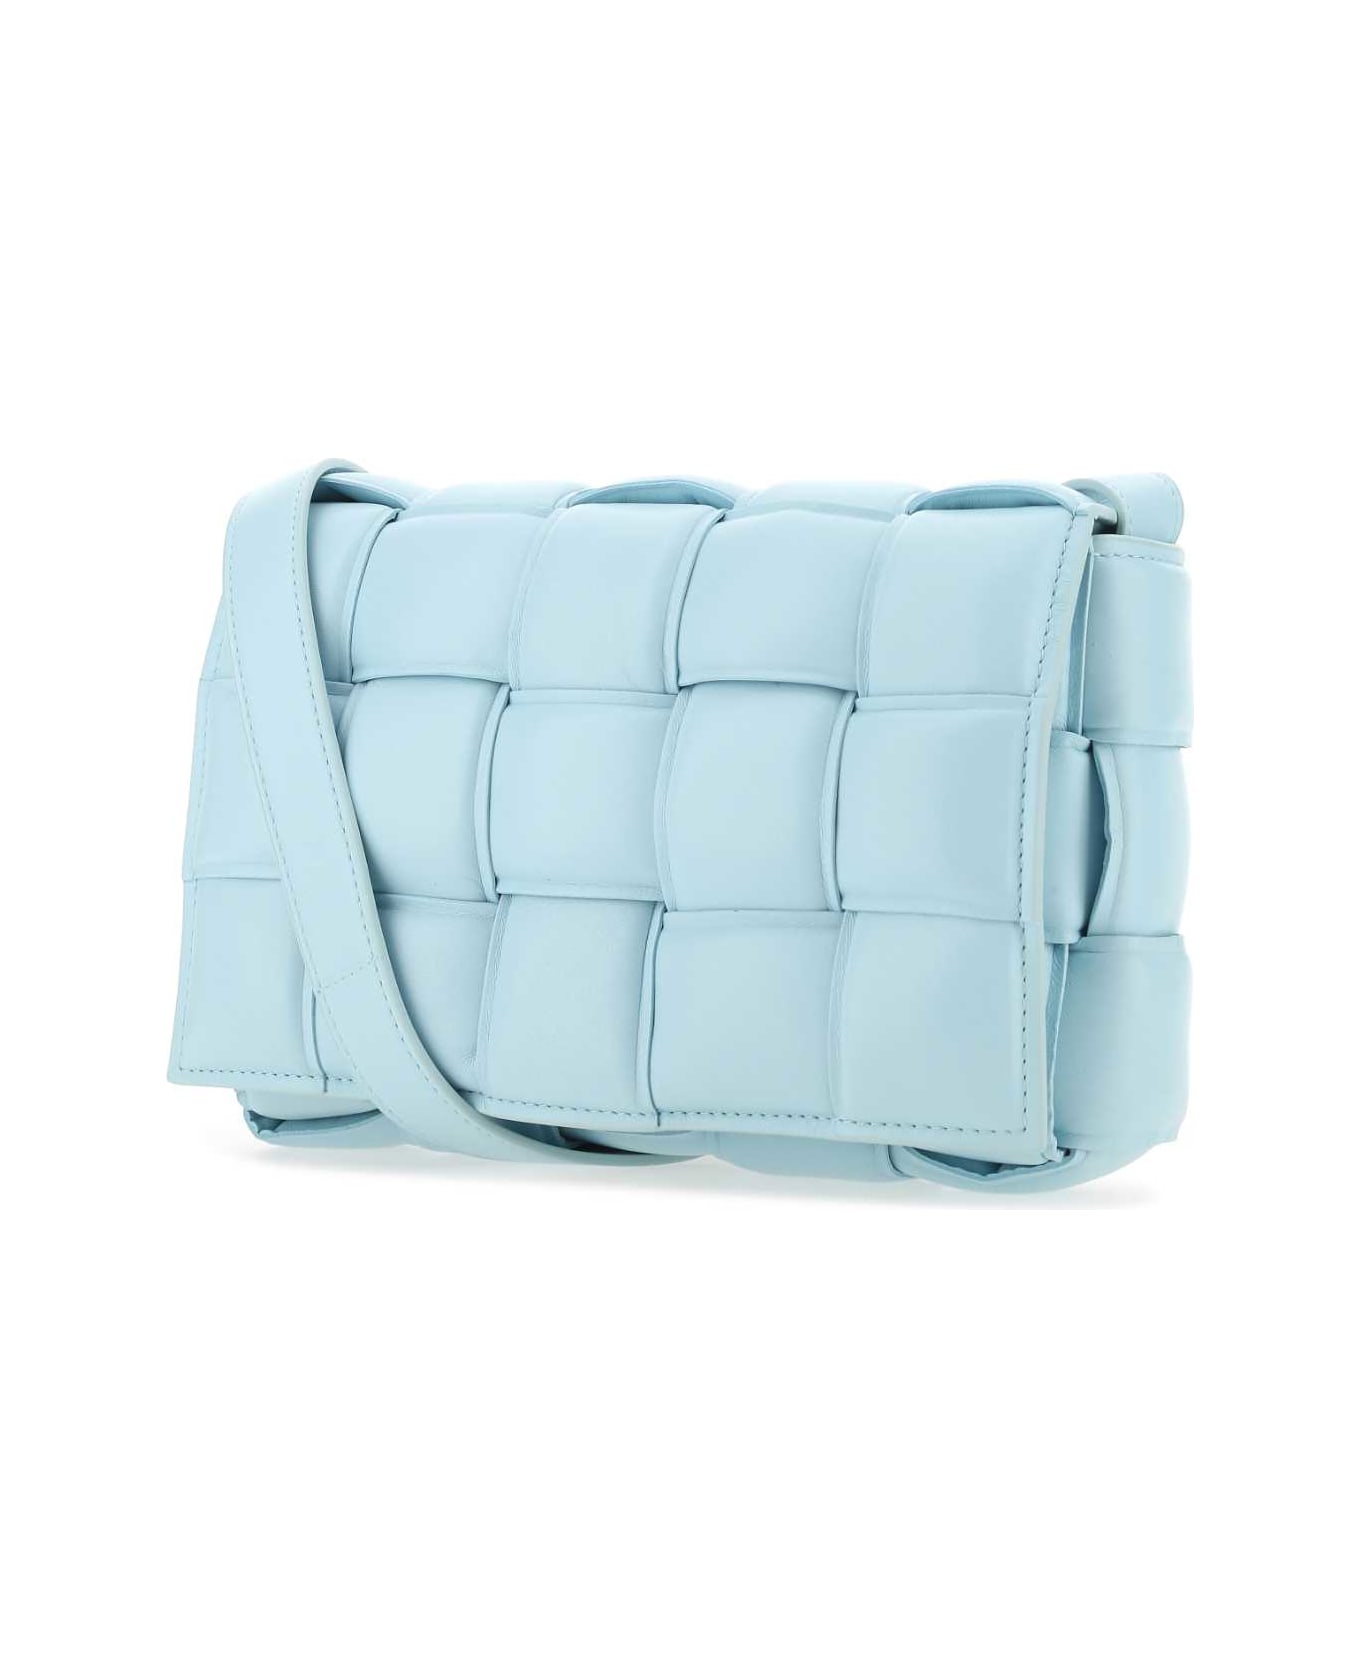 Bottega Veneta Light-blue Nappa Leather Small Padded Cassette Crossbody Bag - 3915